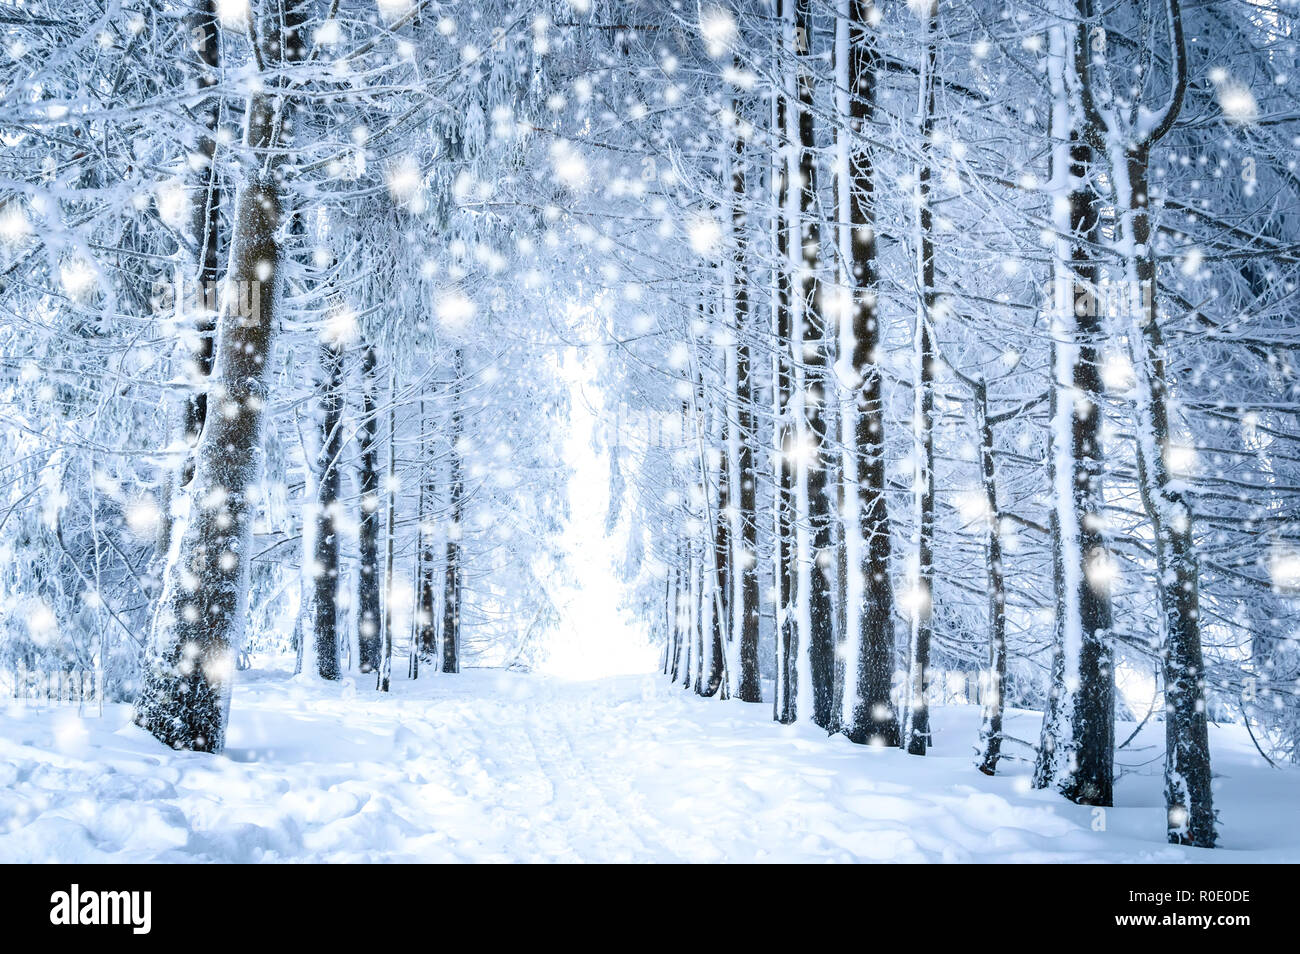 Mágico paisaje de invierno: ruta entre árboles nevados en el bosque con la caída de nieve Foto de stock